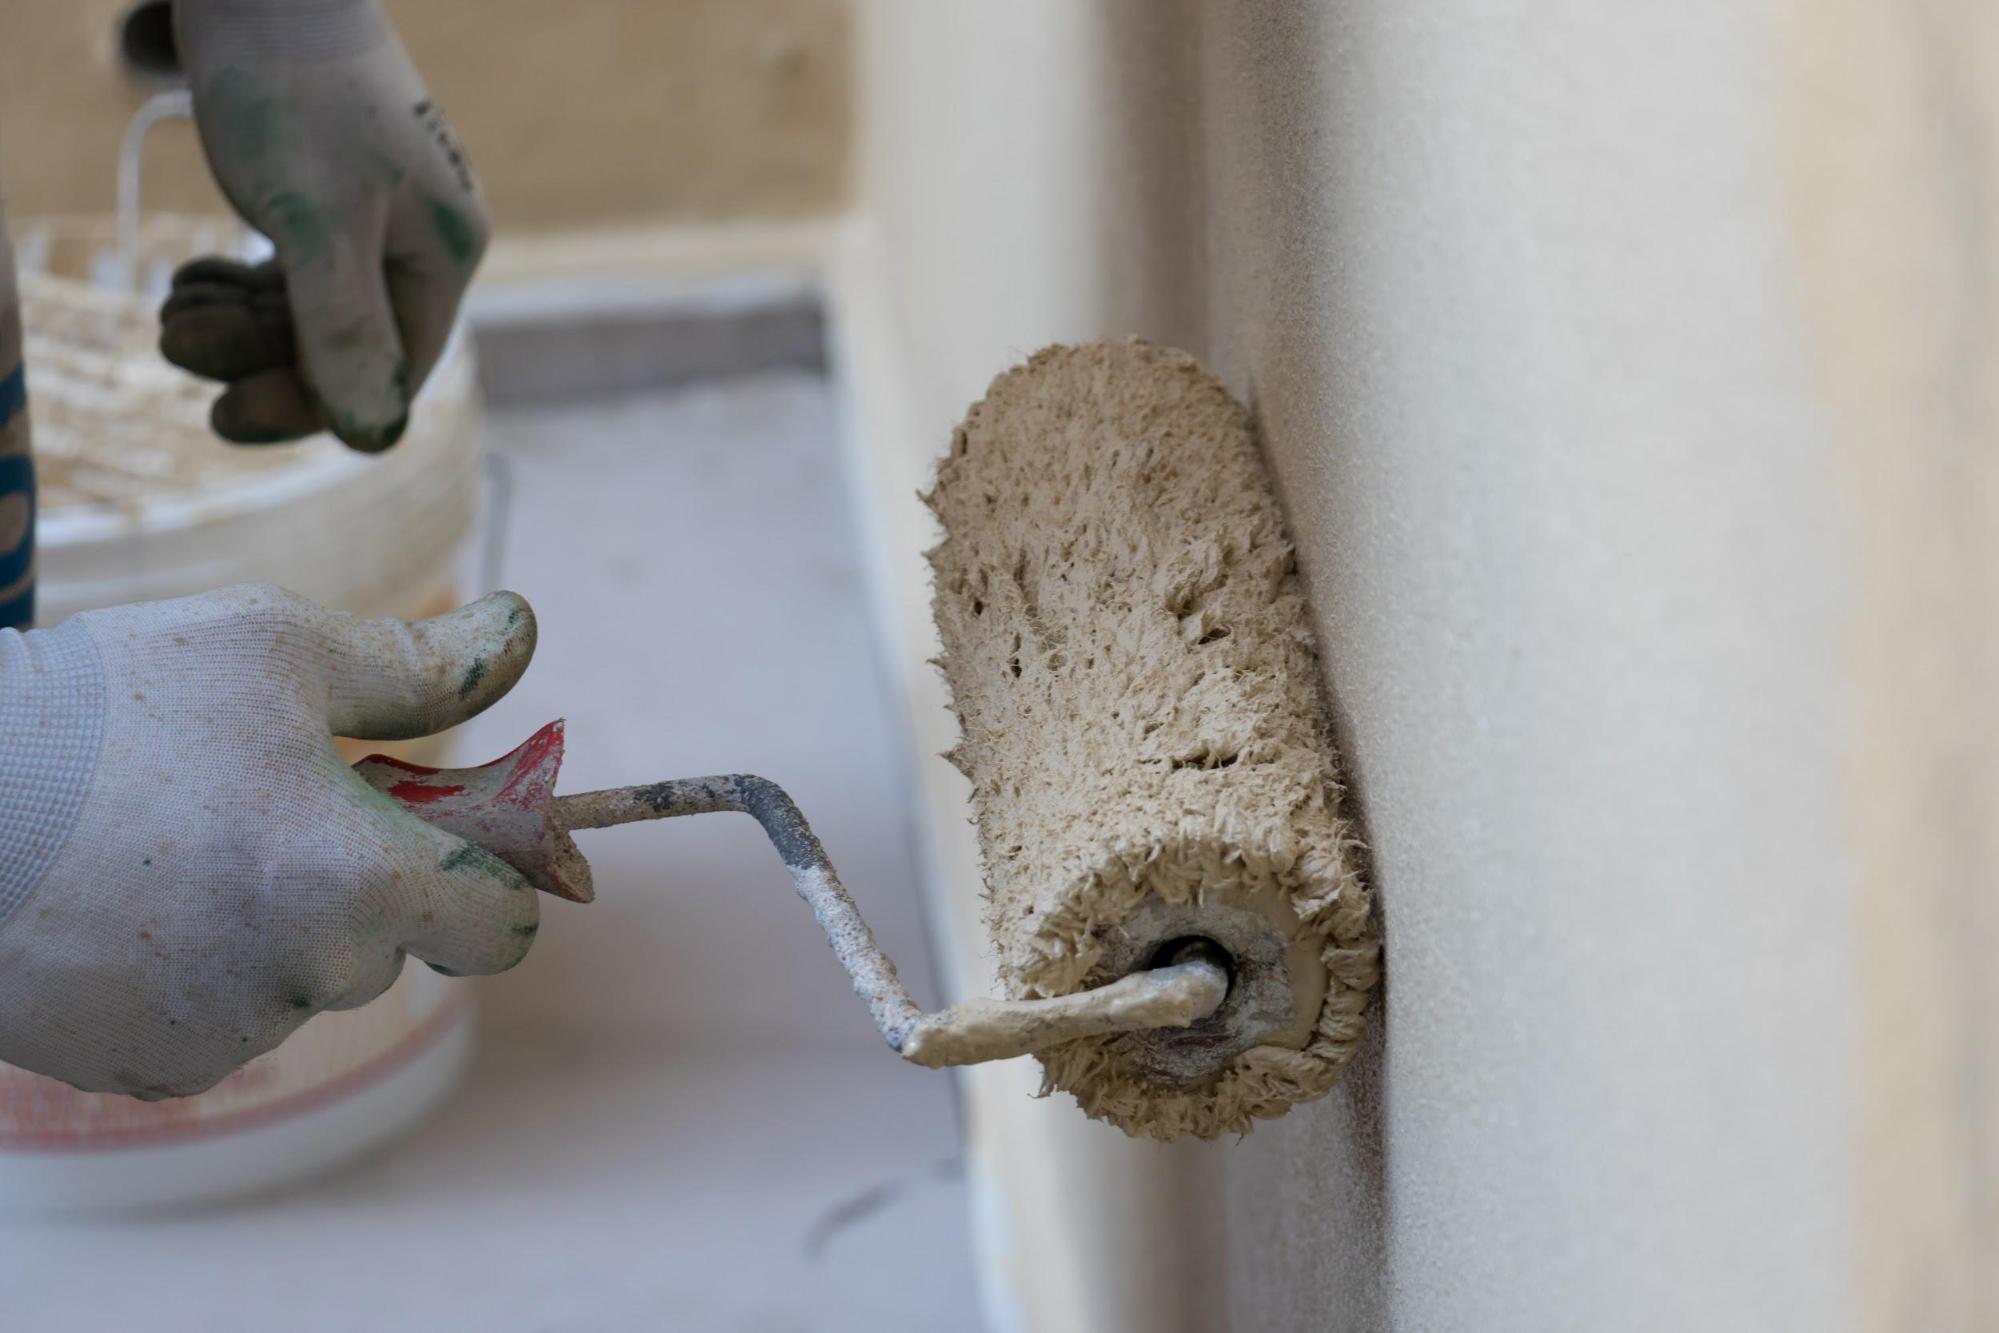 外壁材 Alcパネルの特徴とは 種類 補修工事 塗装について解説 外壁 屋根塗装についてのお役立ち情報